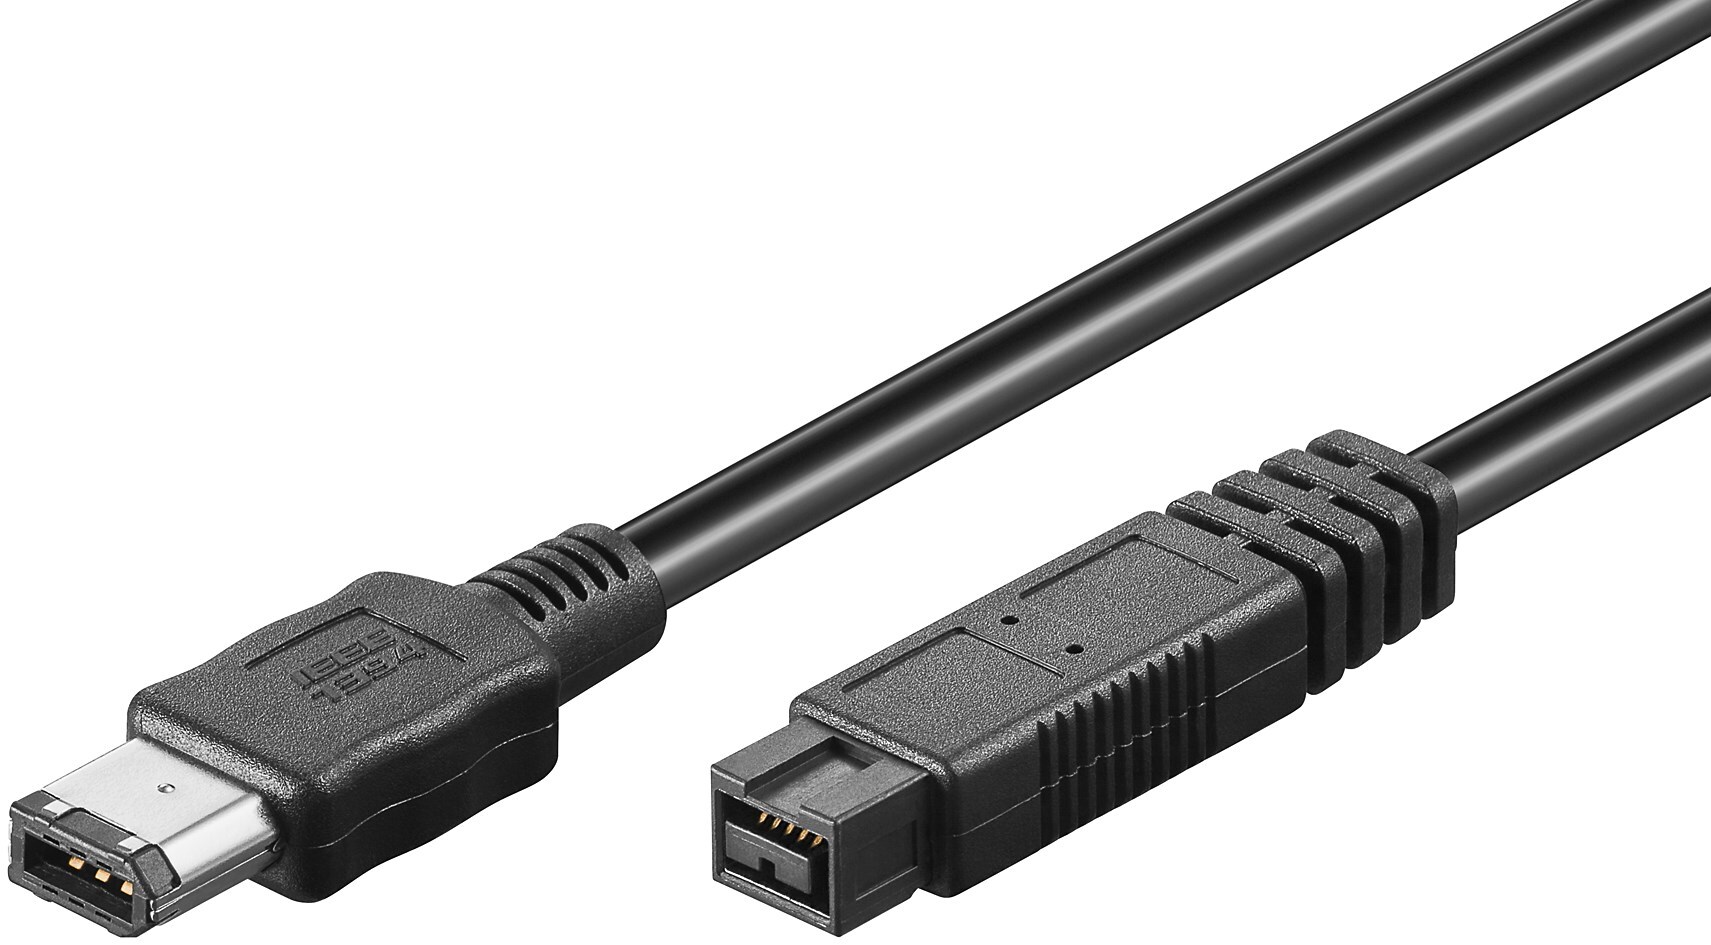 S-Impuls FireWire 400-800 kabel - 6-pins - 9-pins / zwart - 1,8 meter